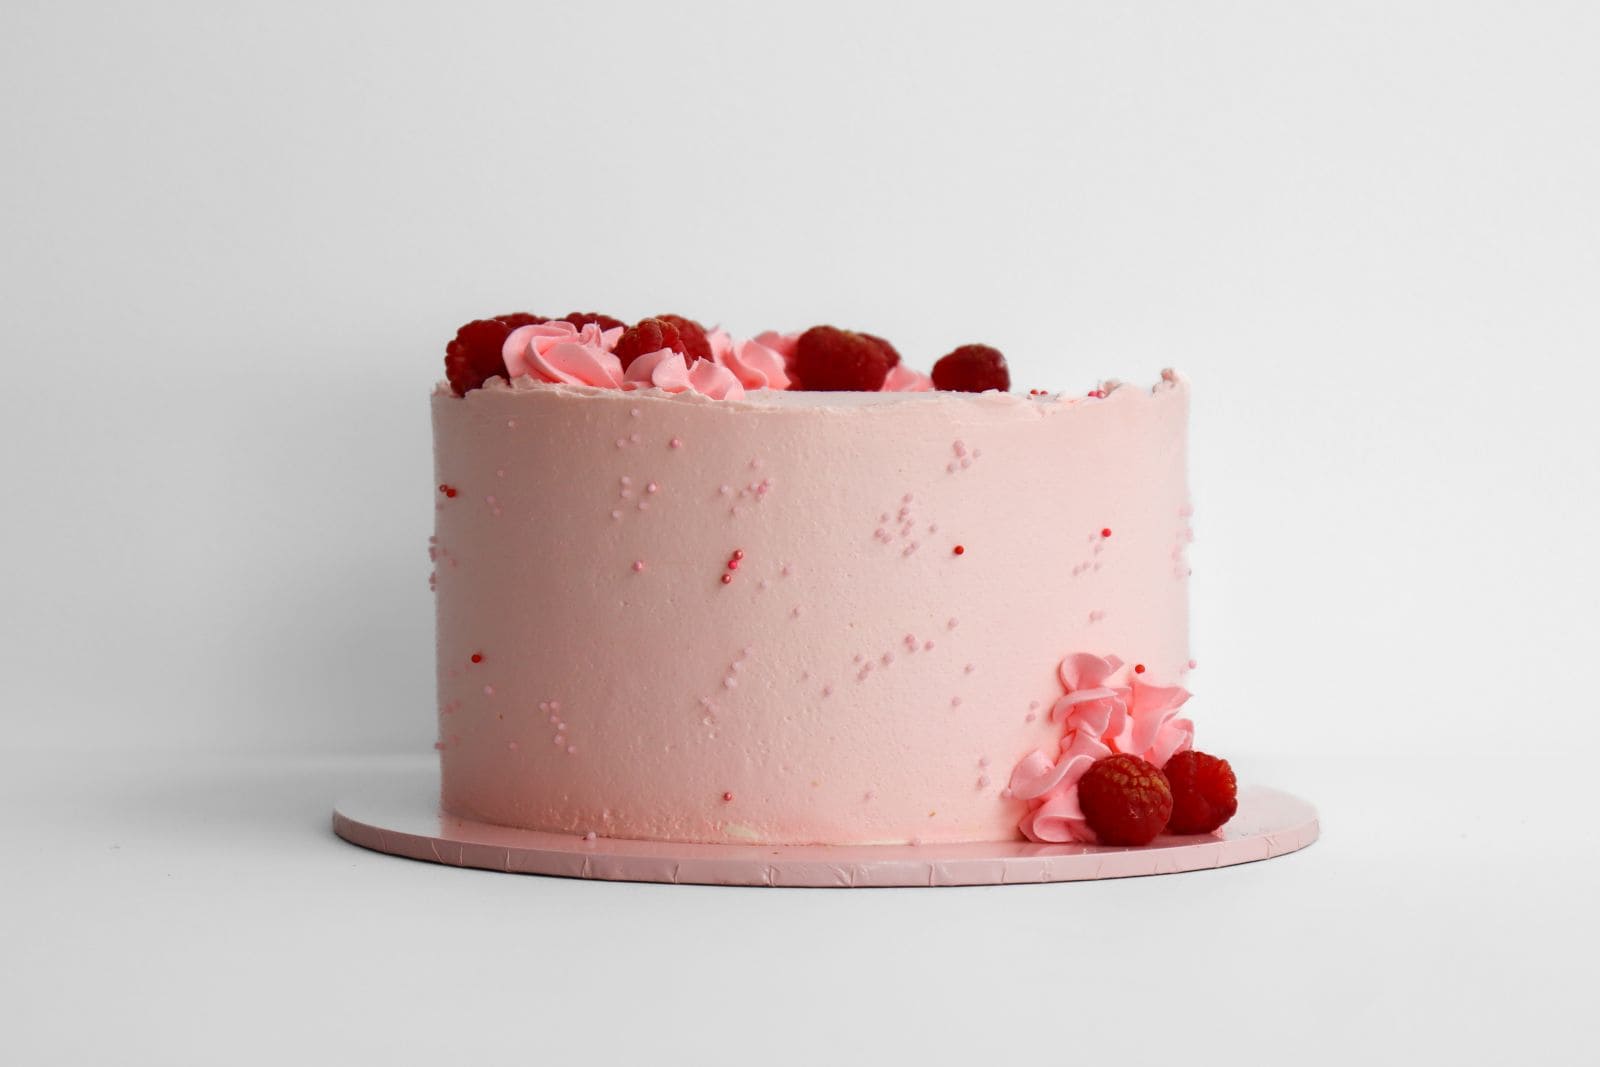 Lemon Raspberry Cake - Baker by Nature